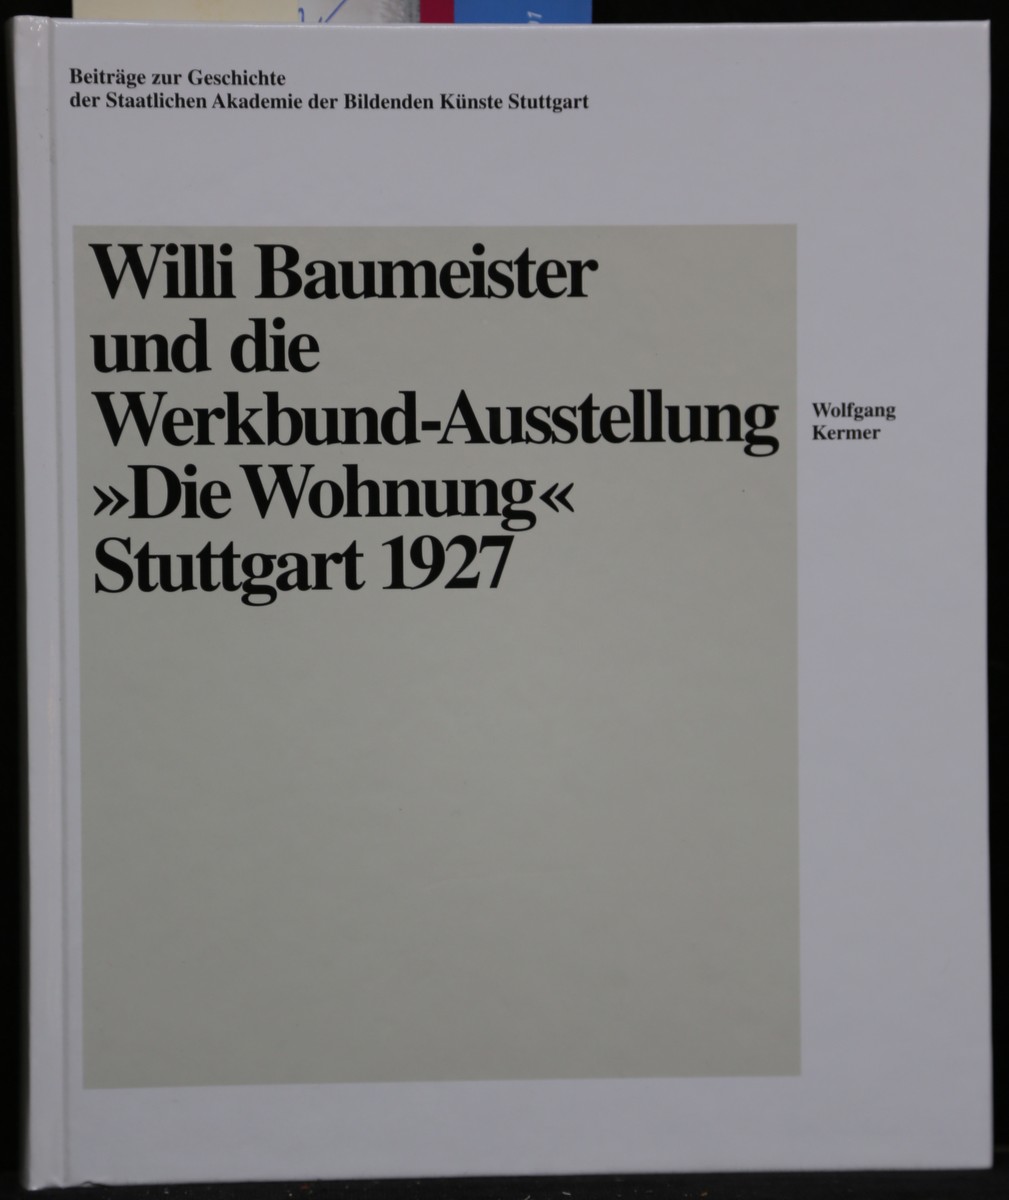 Willi Baumeister und die Werkbund-Ausstellung 